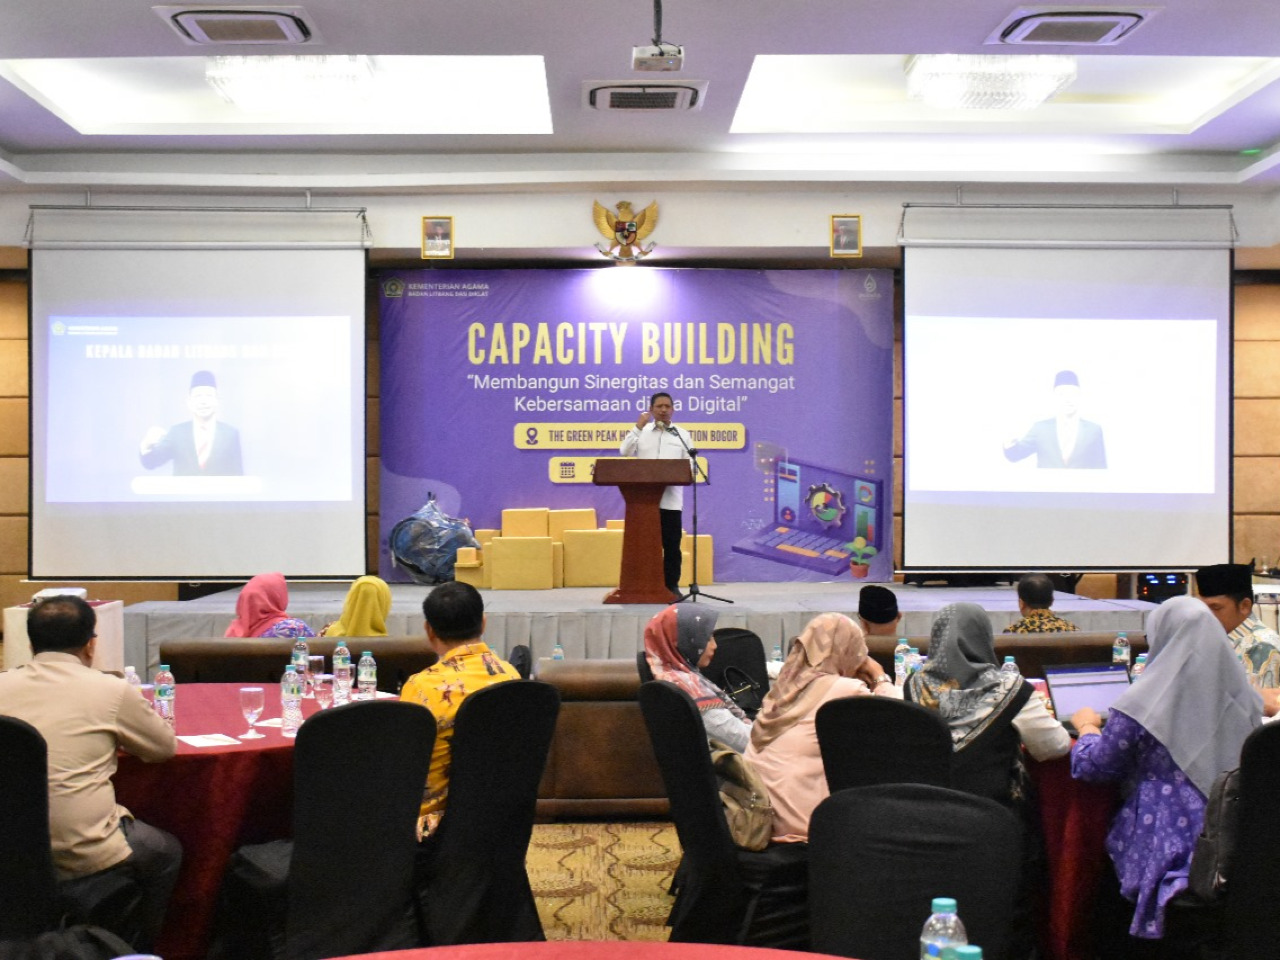 Capacity Building: Setiap yang Dilakukan Secara Personal, Akan Berdampak Terhadap Institusional